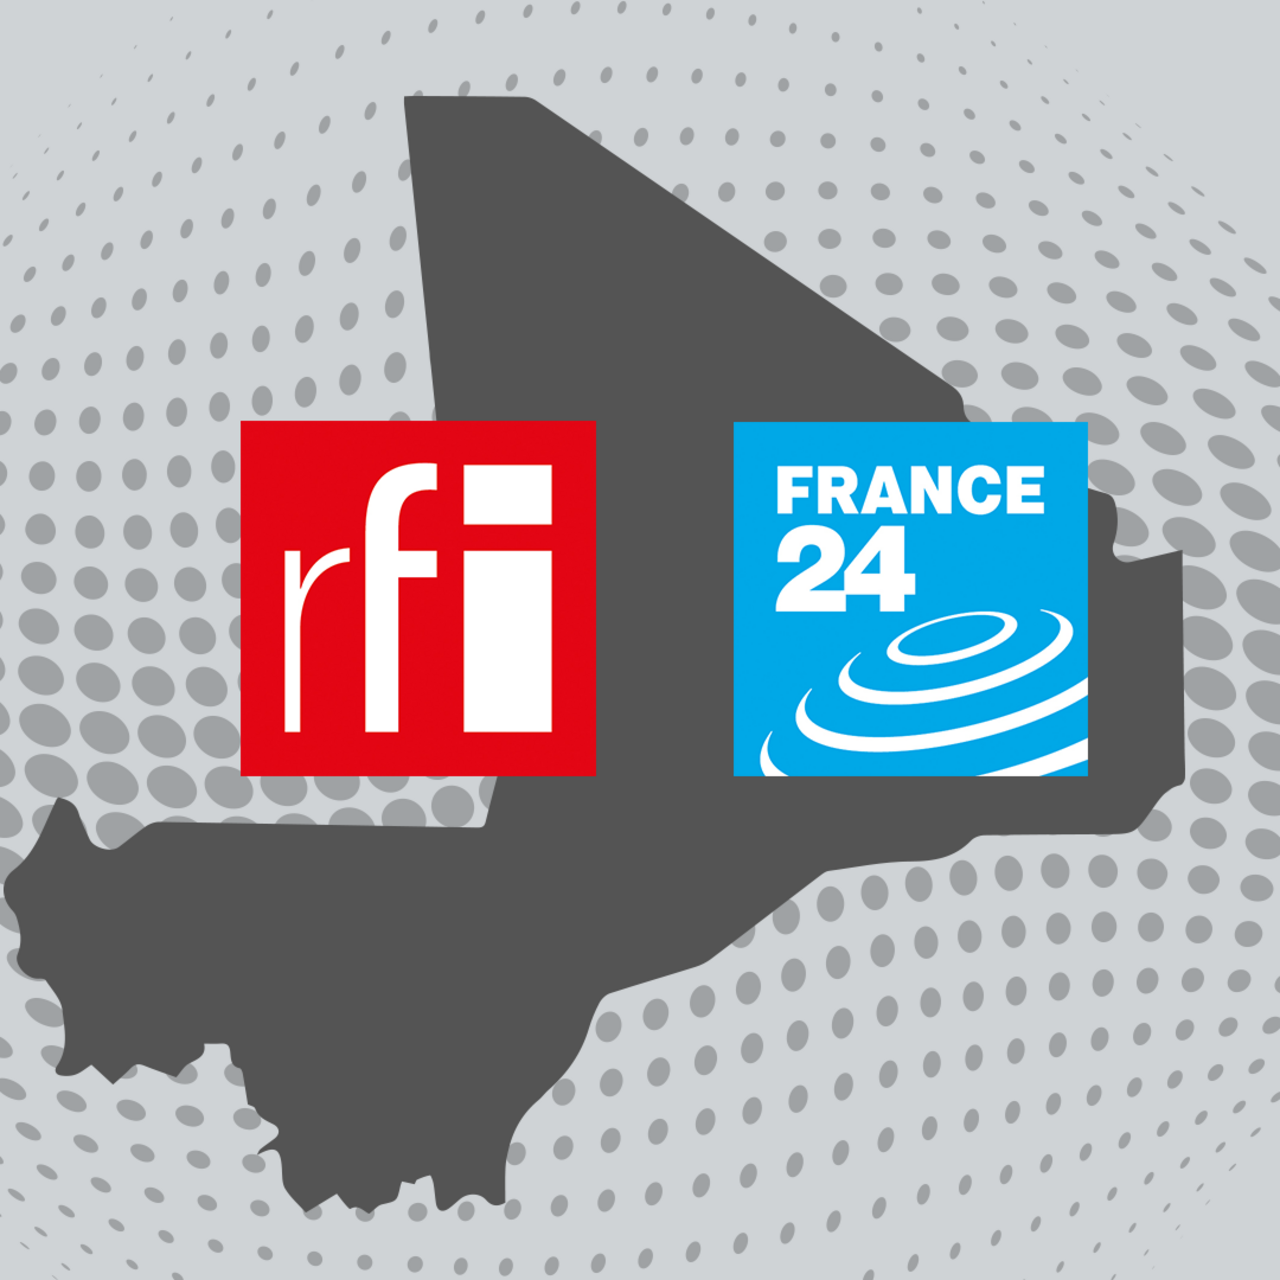 La Haute autorité de la Communication du Mali suspend définitivement la diffusion de RFI et France24